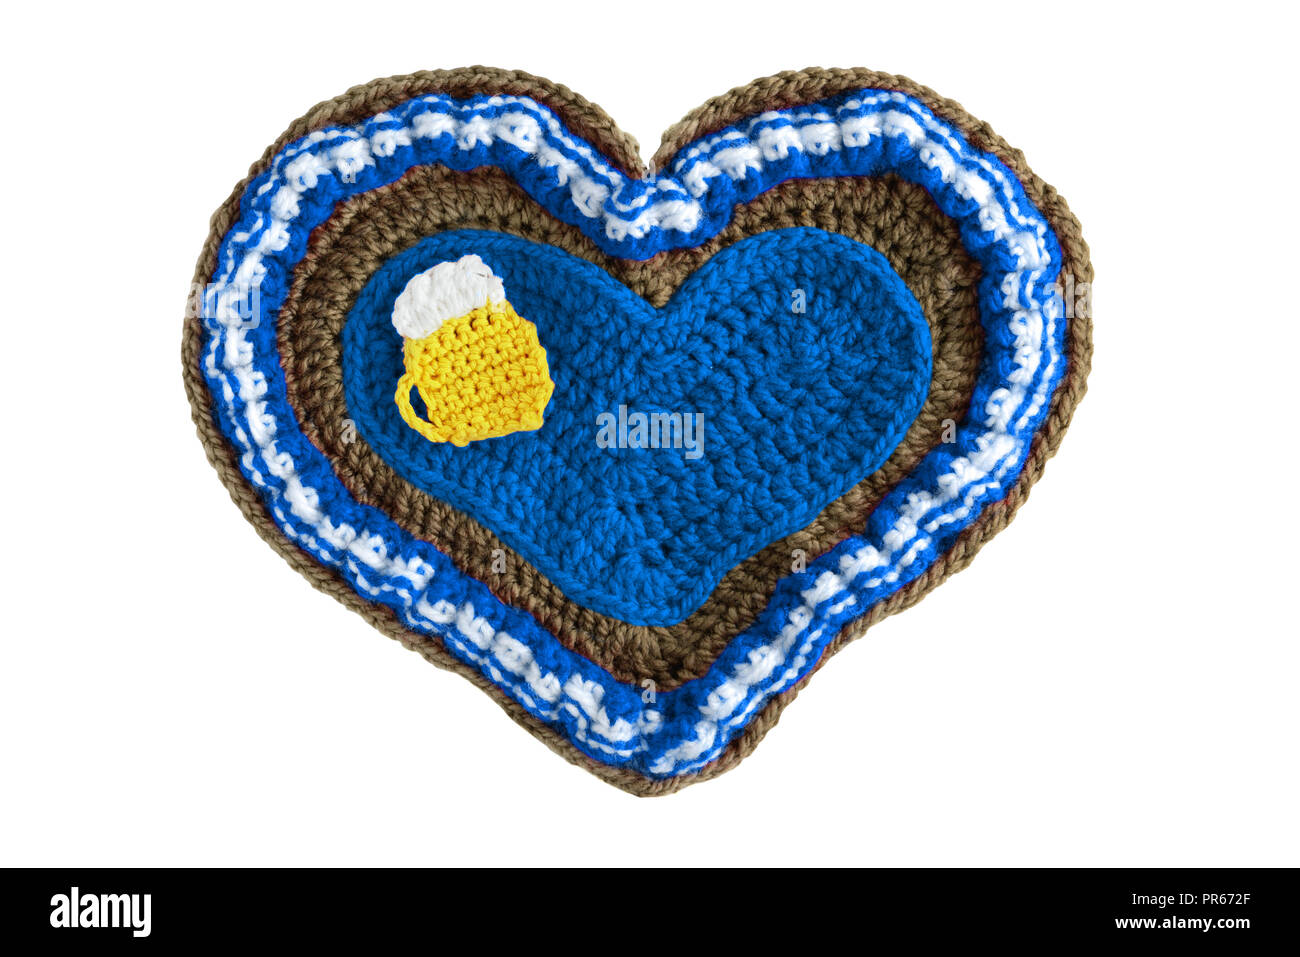 Hand crocheté Oktoberfest (angl. octoberfestival l'événement de la saison à Munich) Gingerbread heart shape valentines day gift avec copie espace isolé sur fond blanc Banque D'Images